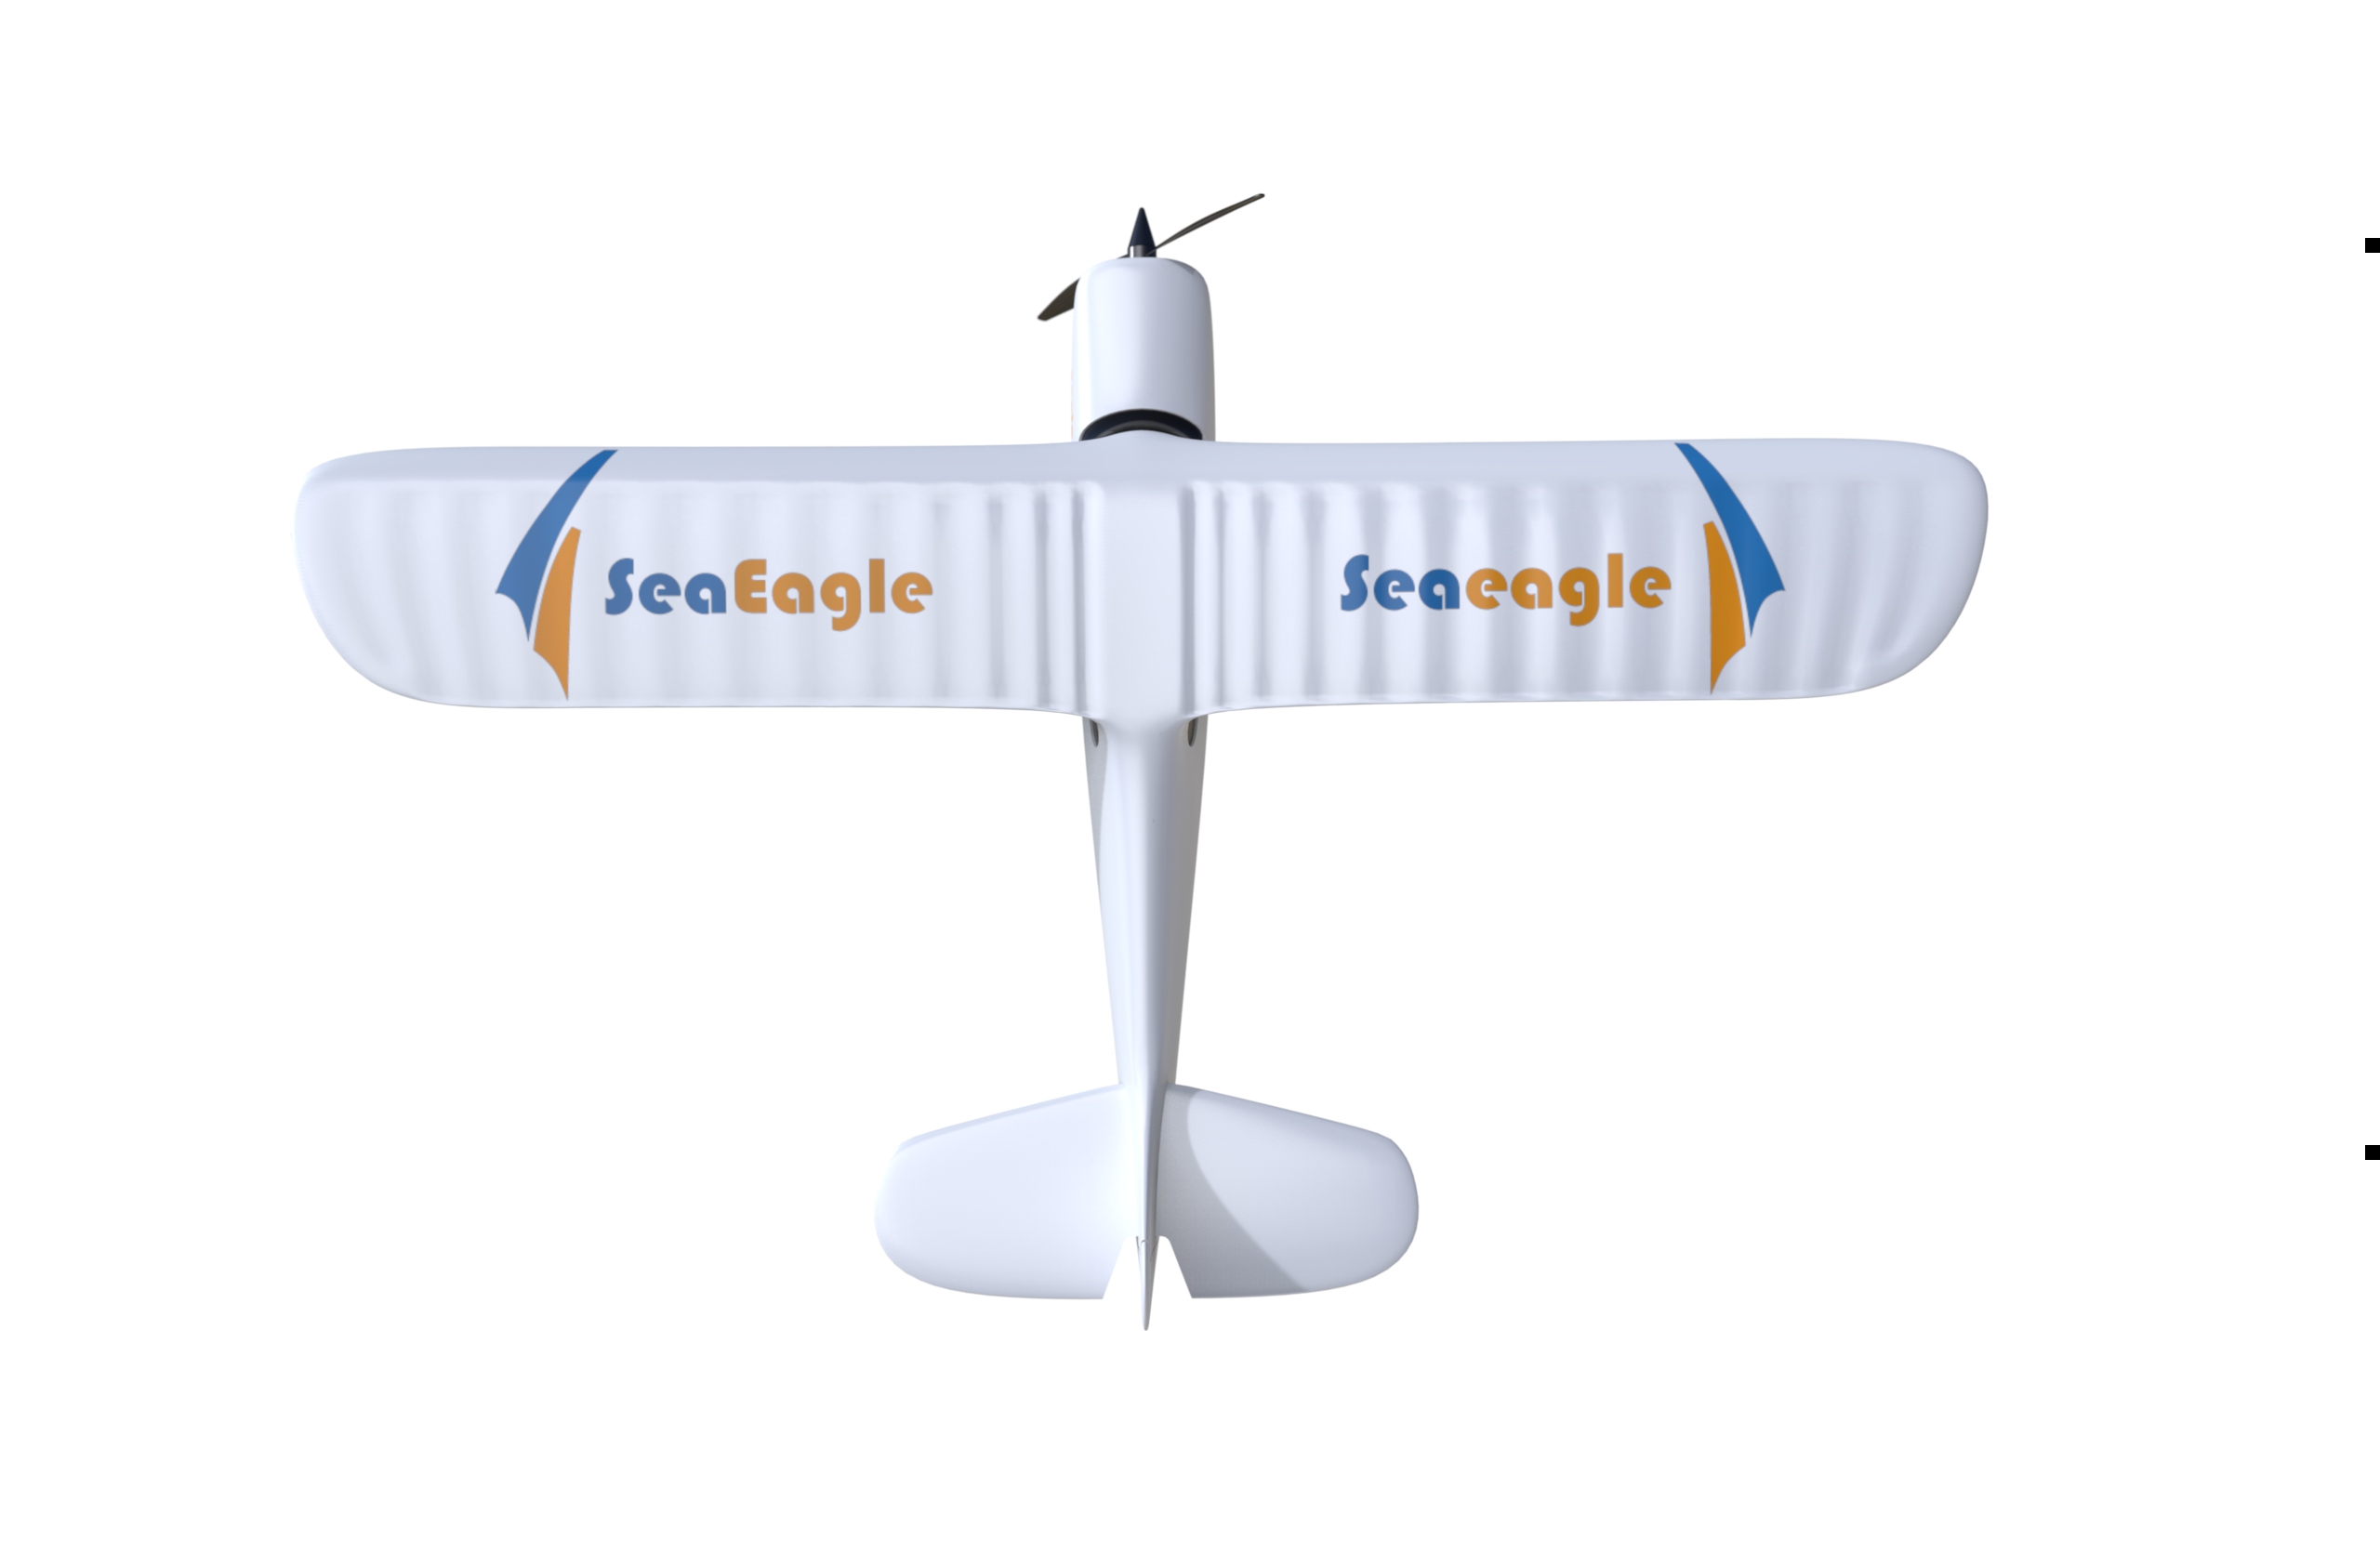 SeaEagle-24G-3CH-515mm-Wingspan-3-6-Axis-3D-Aerobatic-EPS-FPV-RC-Airplane-RTF-1705993-5